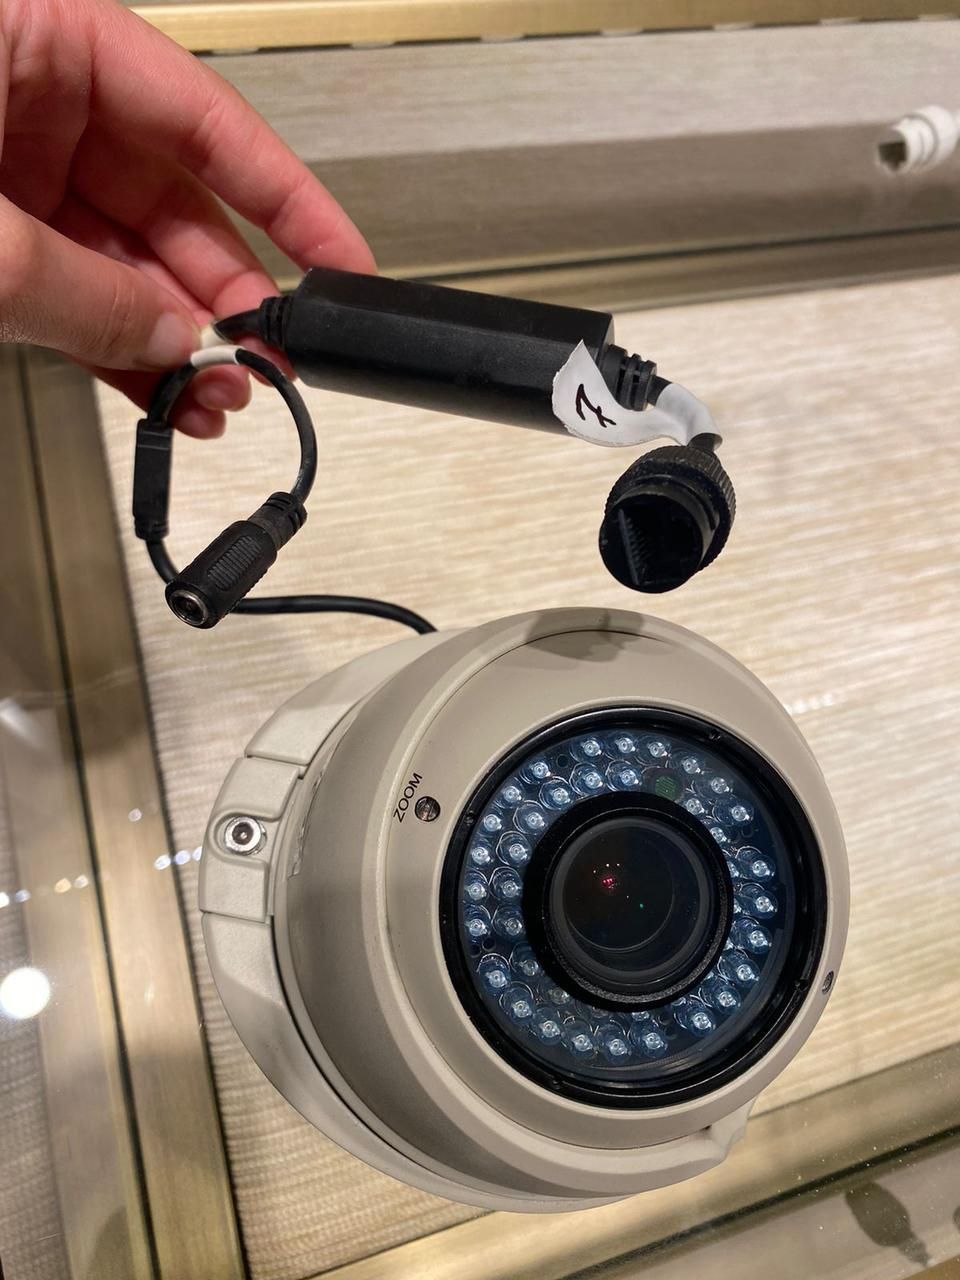 Камеры видео наблюдения